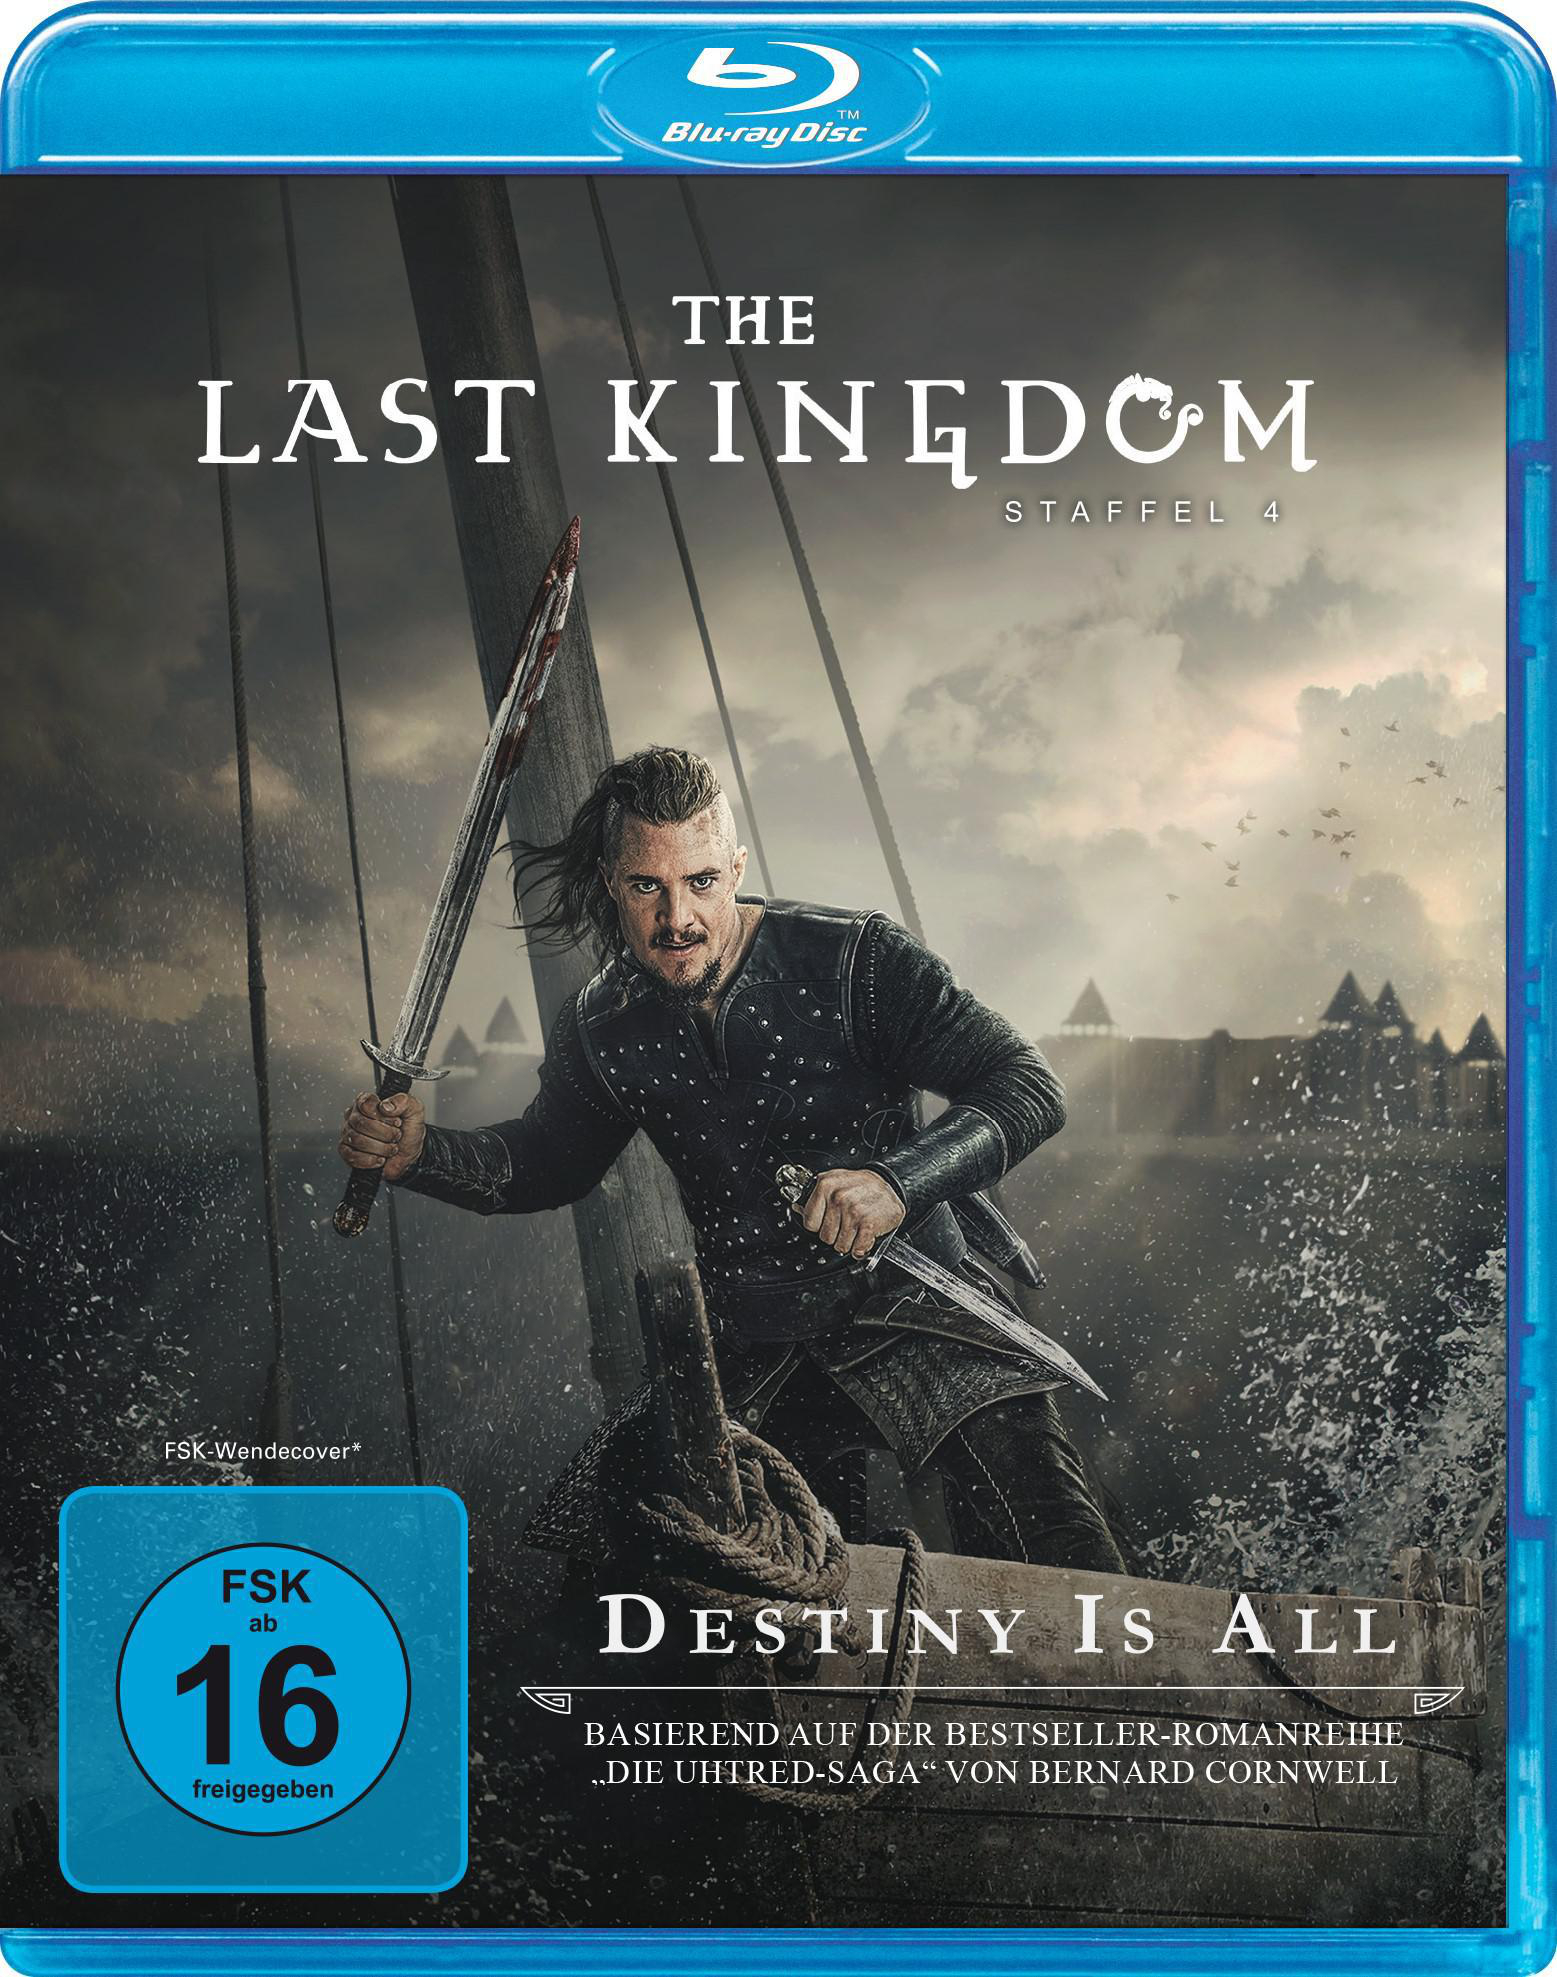 Blu-ray 4 Kingdom - Staffel Last The